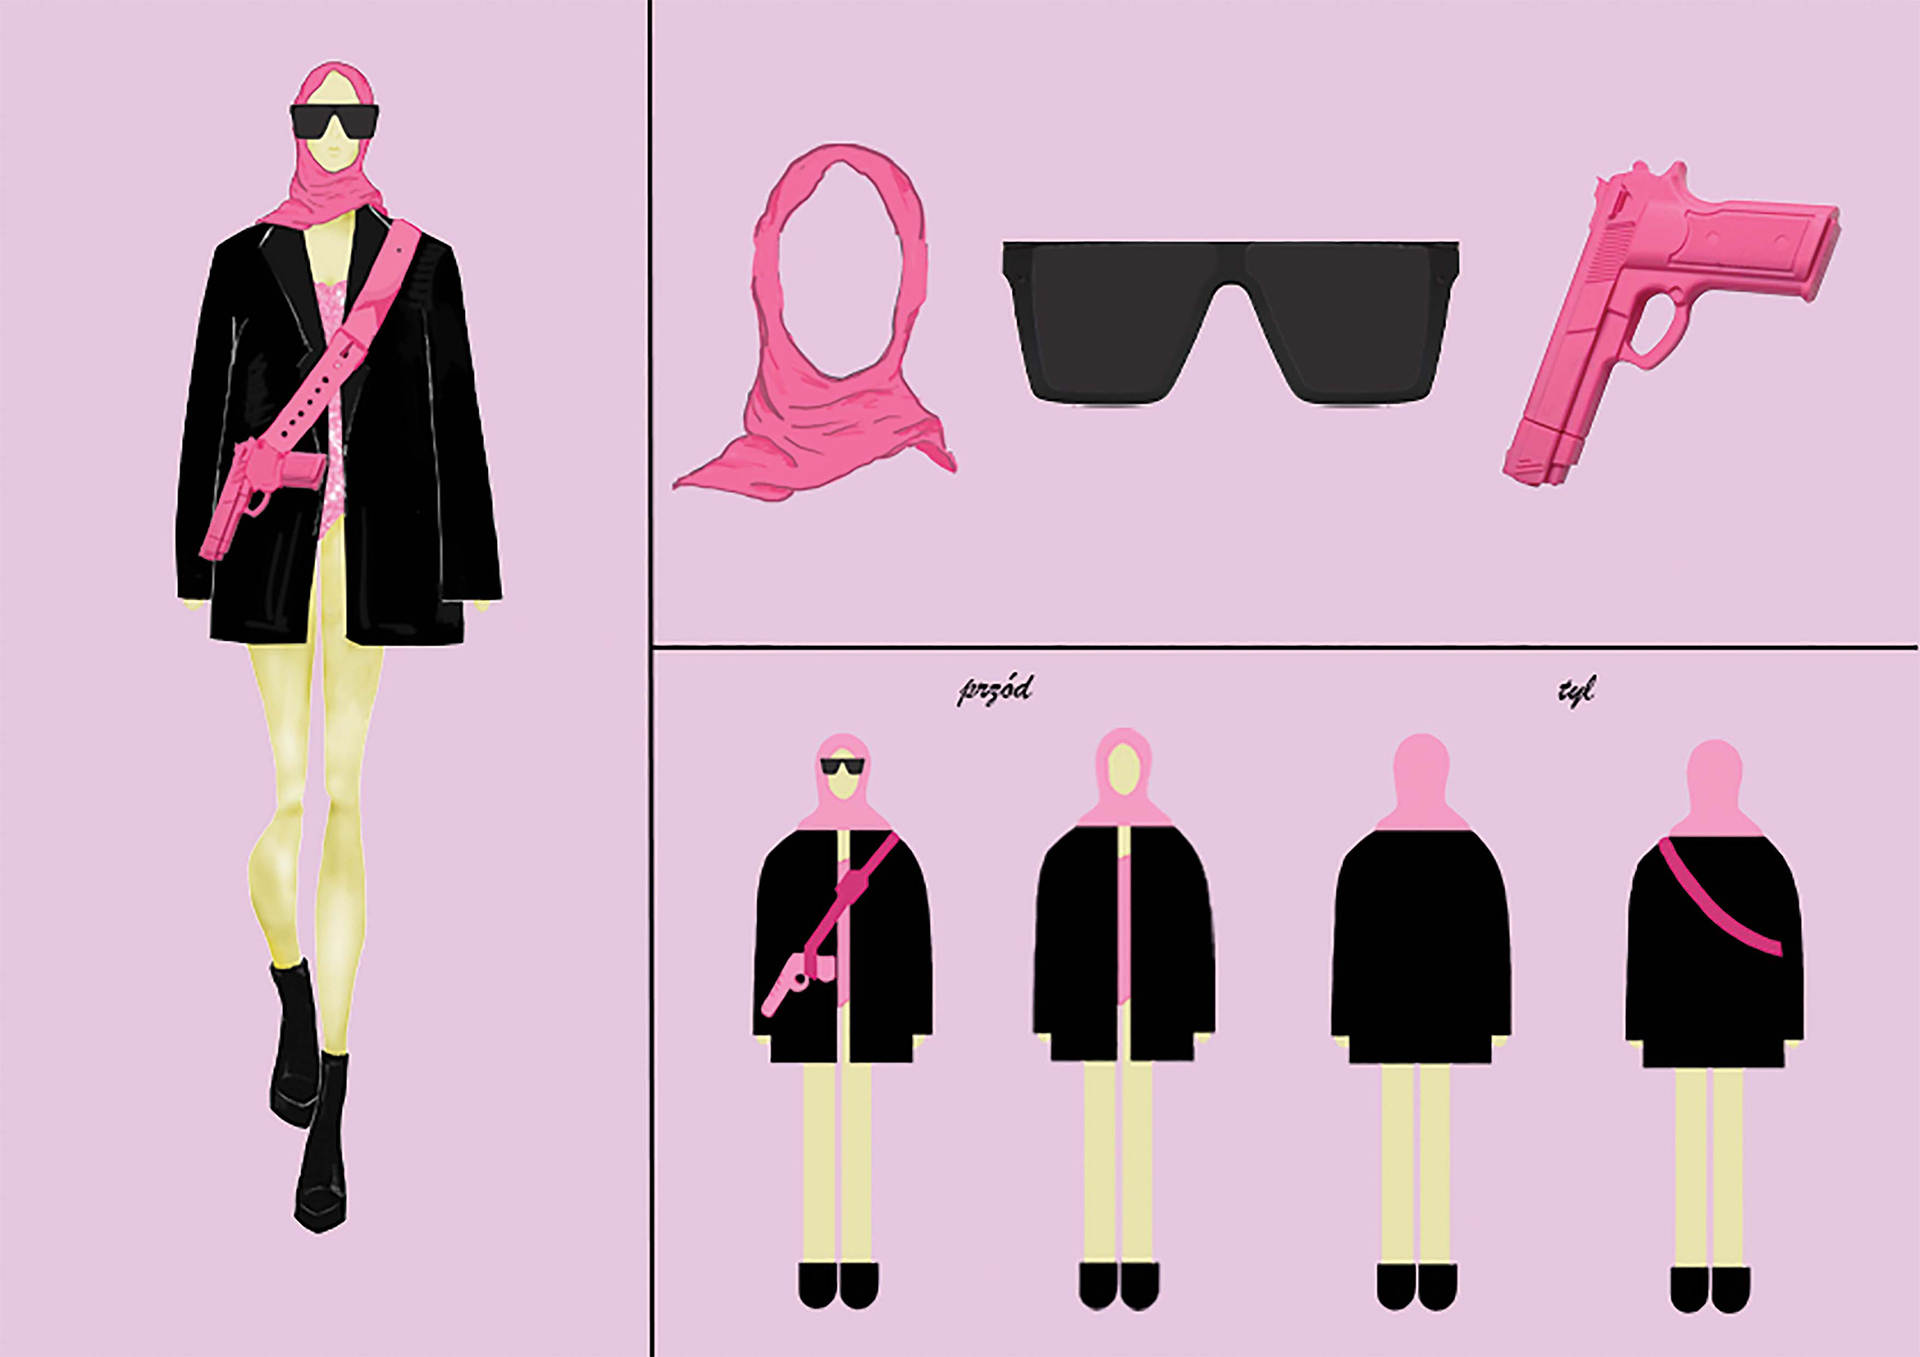 Rysunki na różowym tle przedstawiające projekt postaci w czarnych okularar z pistoletem i chustą na głowie